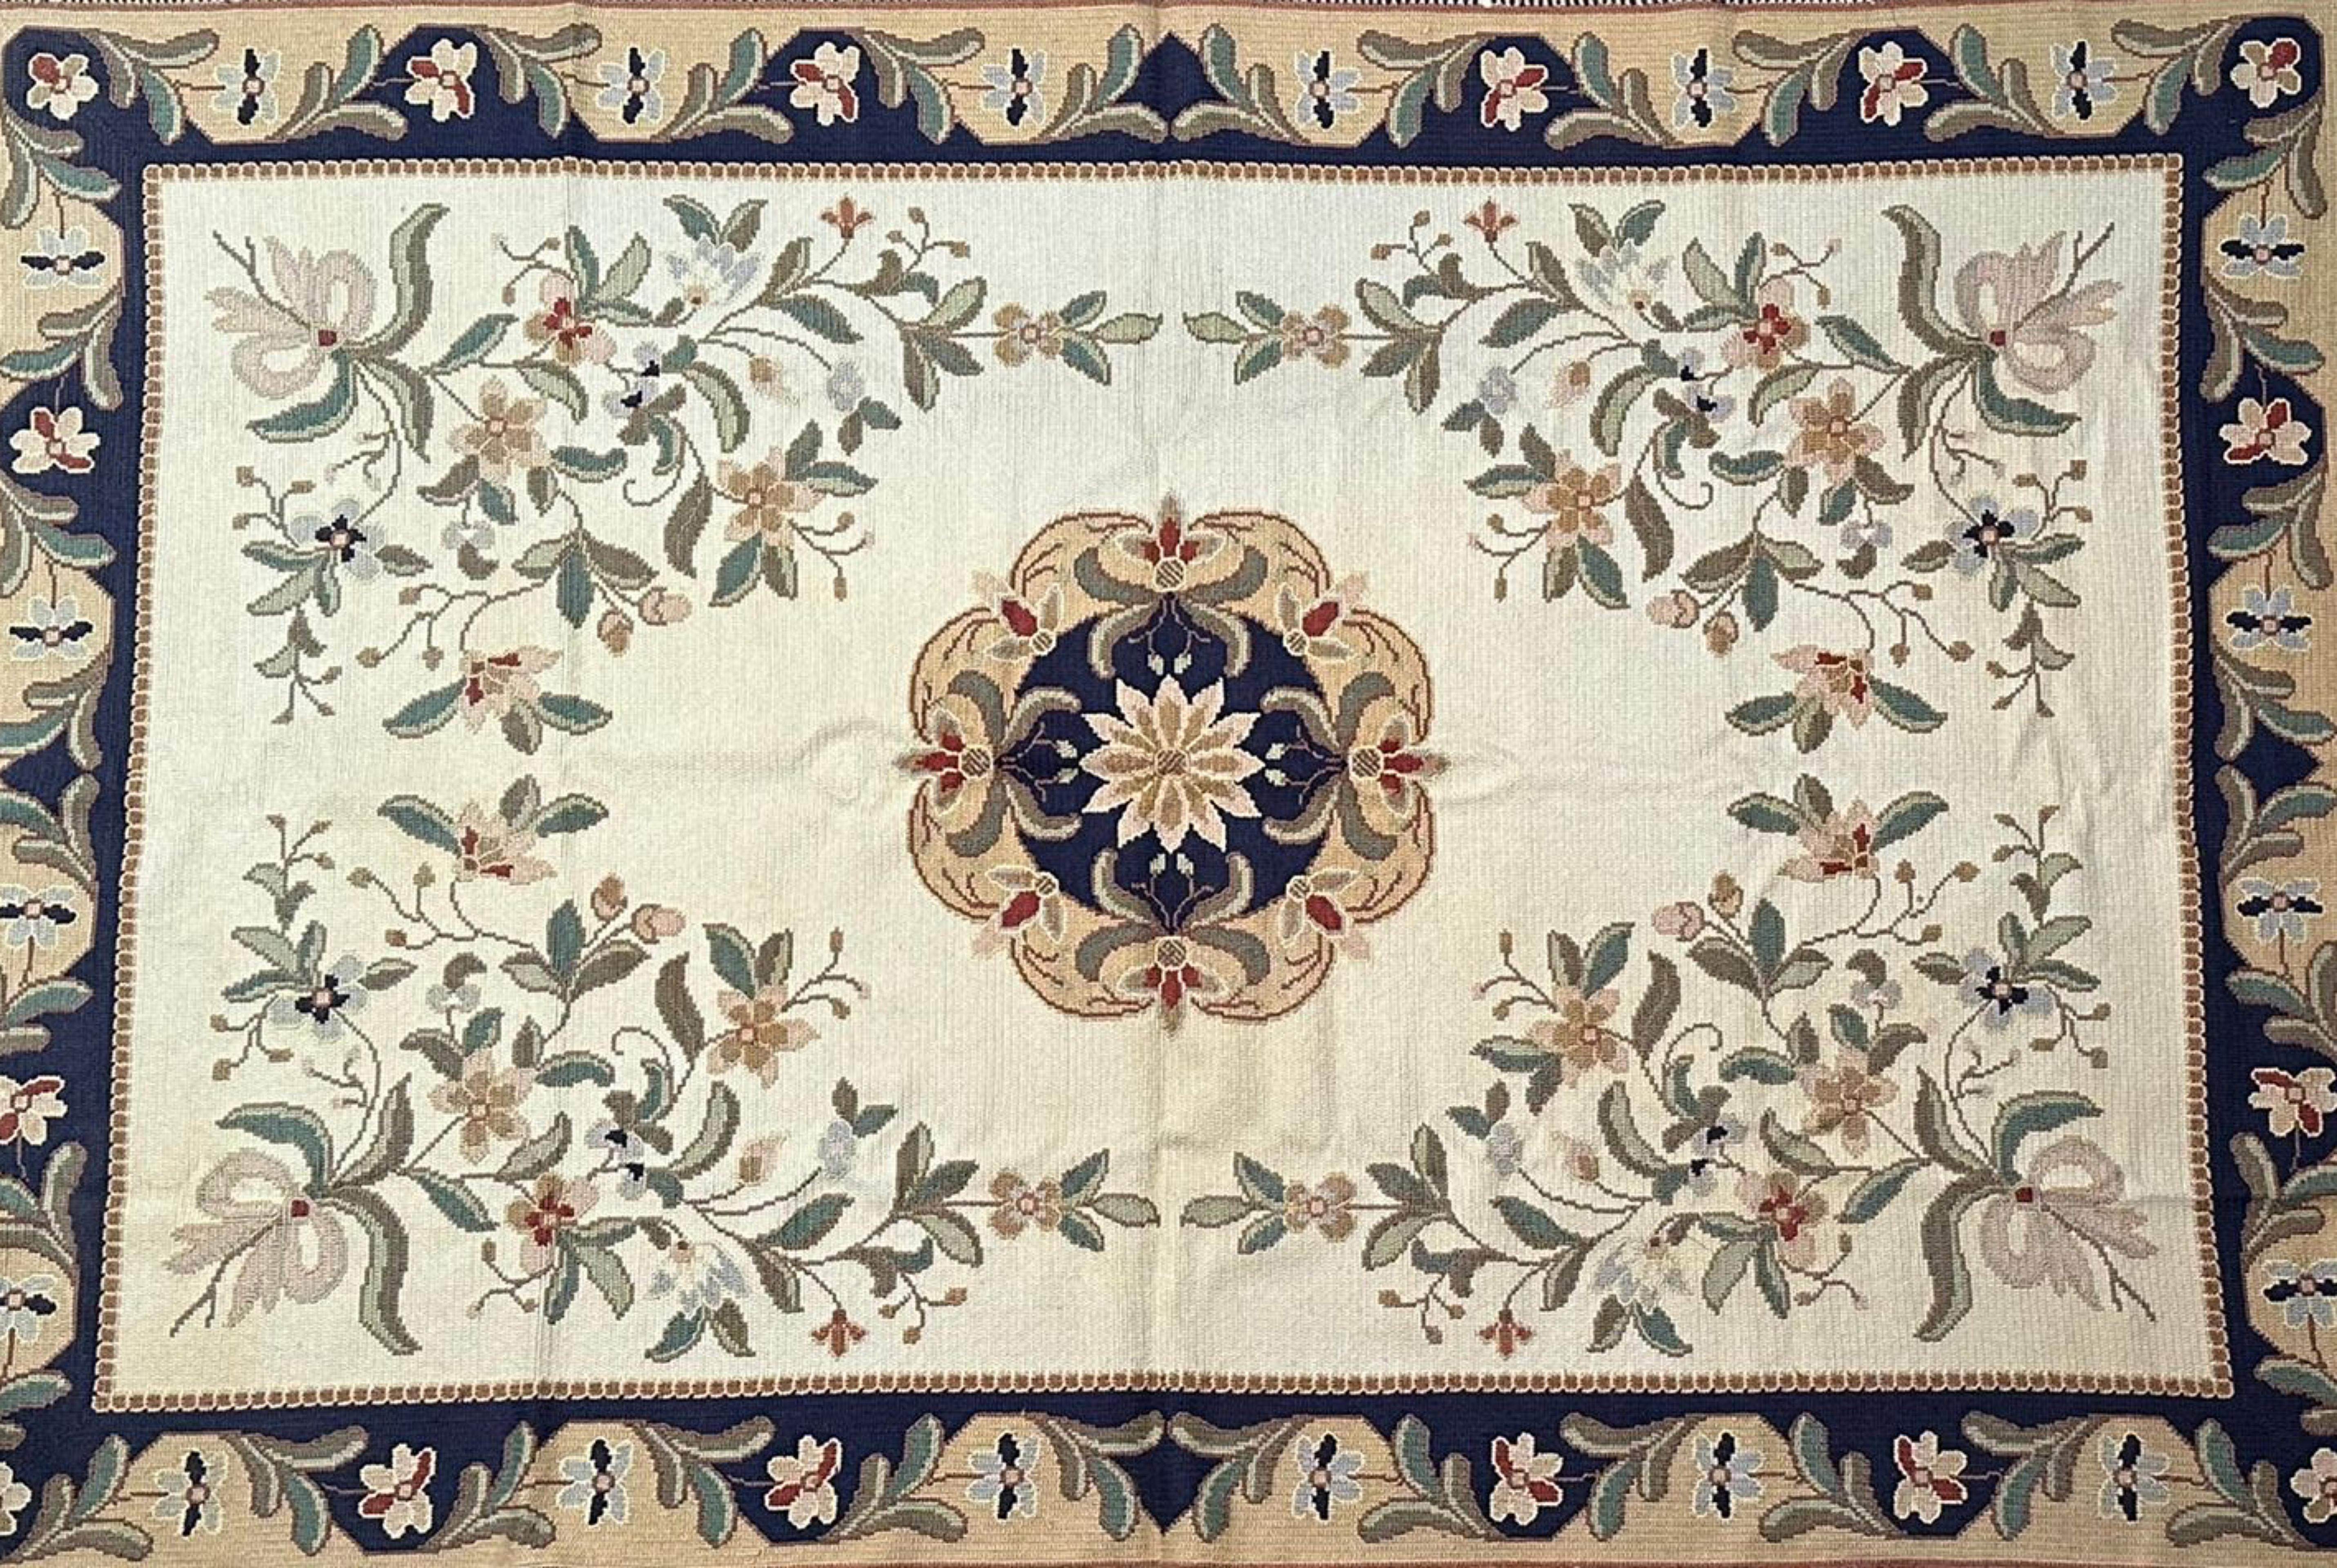 Magnifique tapis portugais Arraiolos 20ème siècle
fabriqué à la main en laine
297cm x 200cm
comme neuf